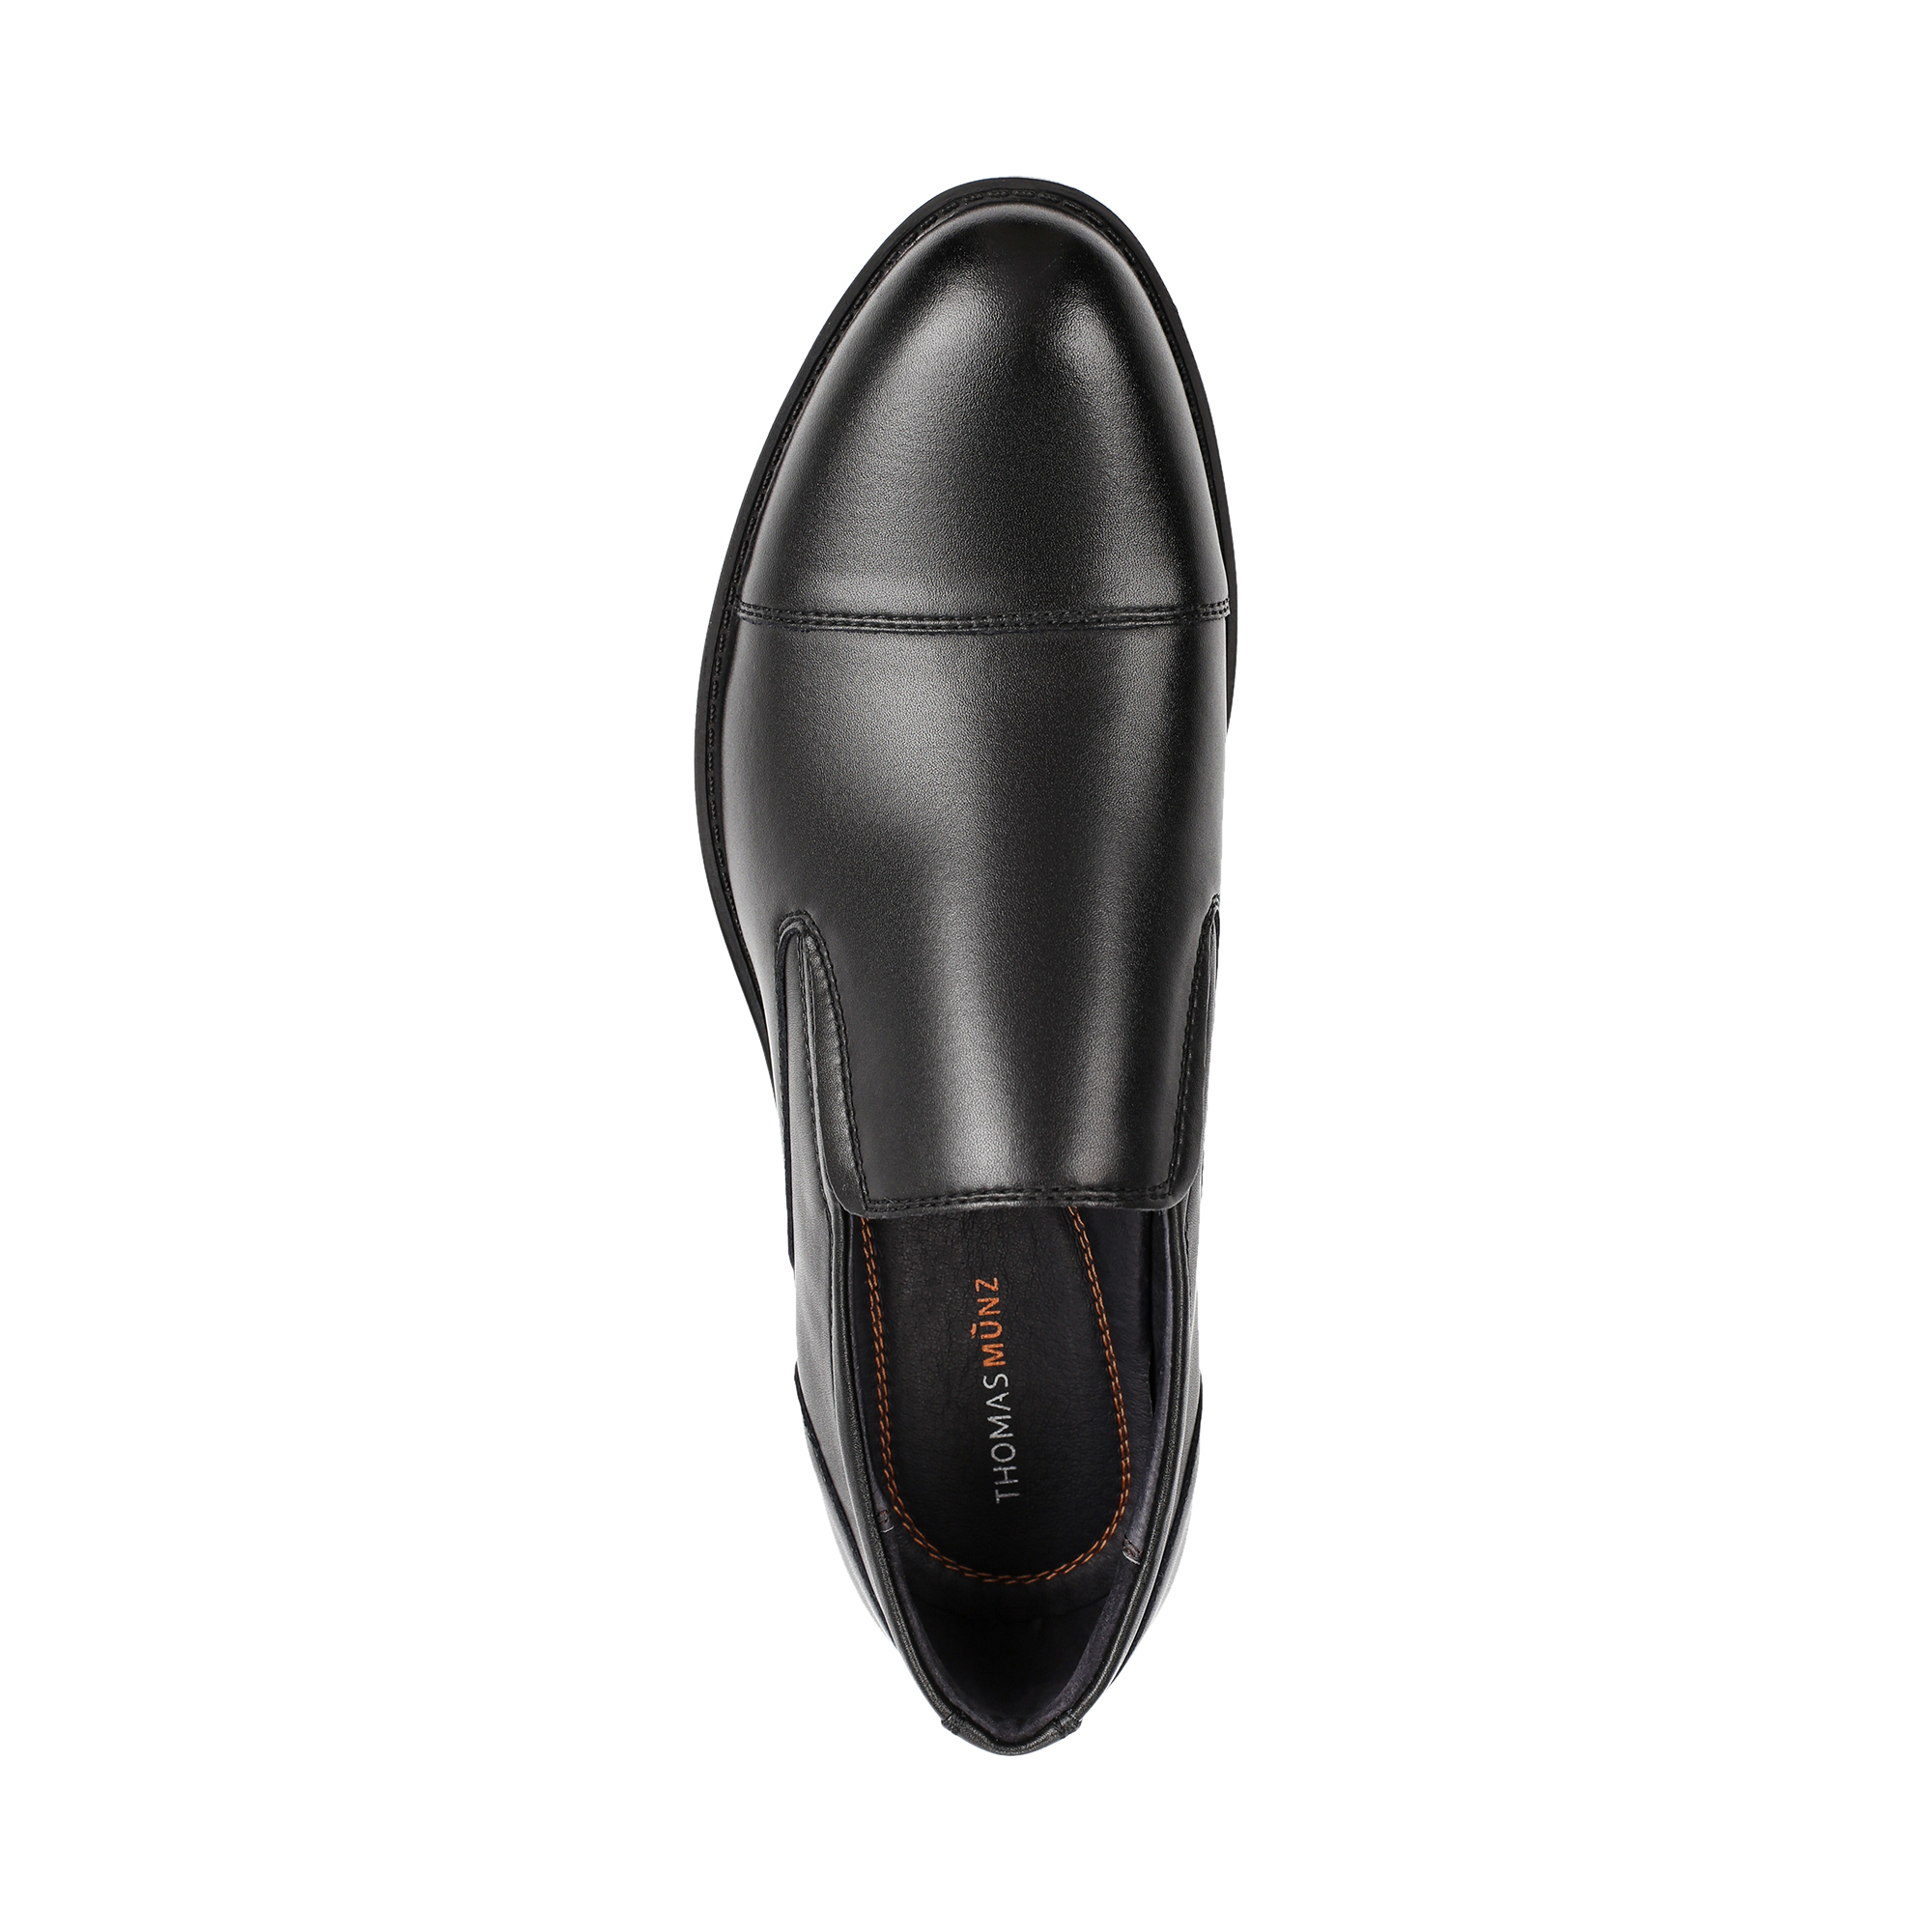 Туфли/полуботинки Thomas Munz 058-231A-1602, цвет черный, размер 40 - фото 5